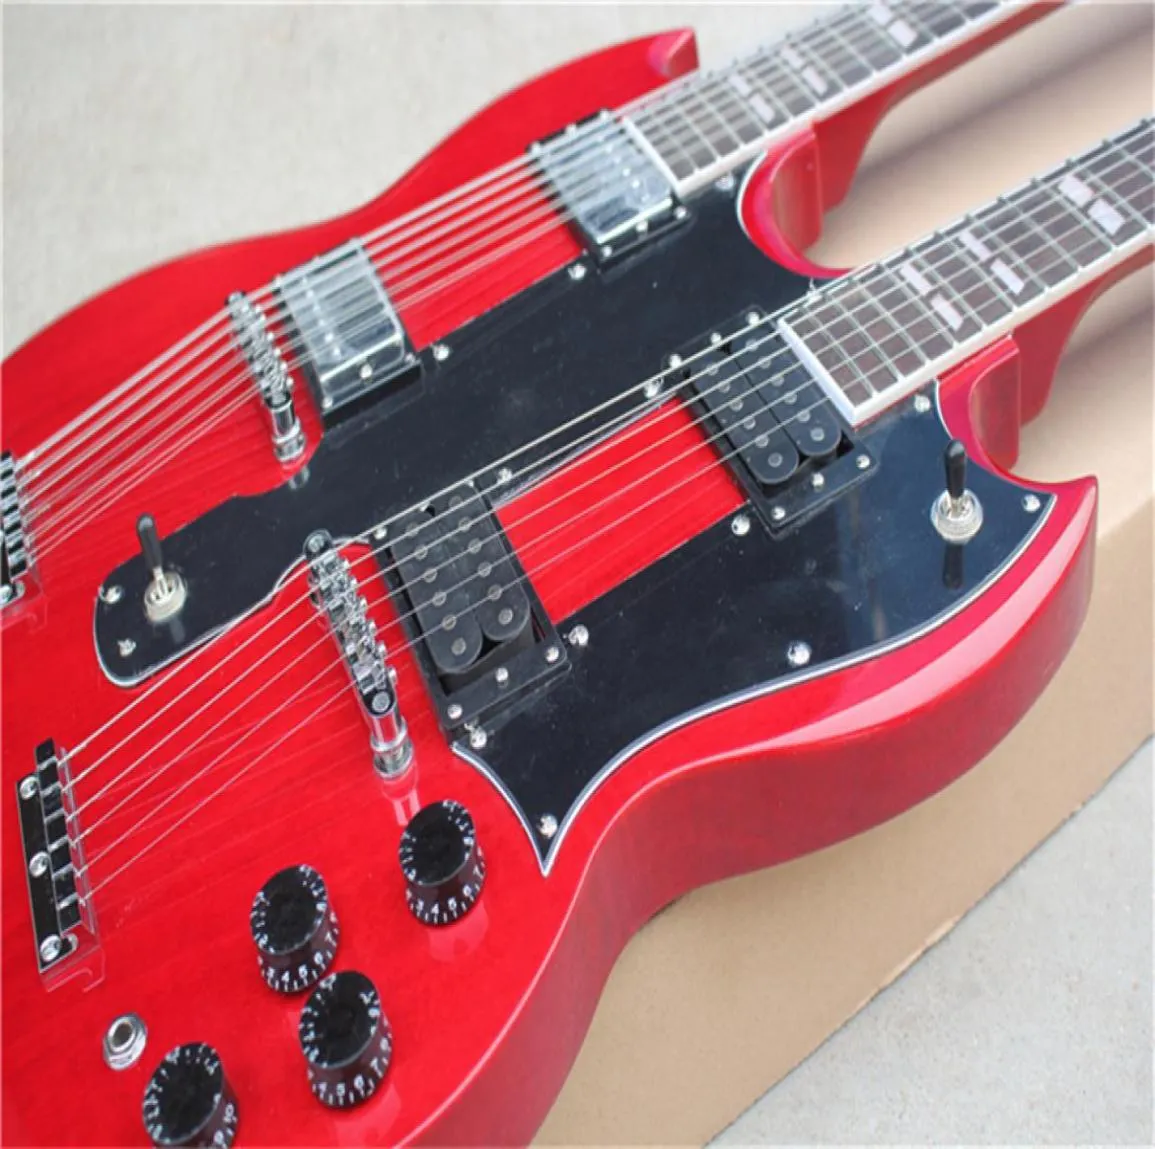 ダブルネック1275エレクトリックギターレッドマホガニーボディHHピックアップローズウッドフィンガーボードシェルインレイスペシャルテールピース12および6ストリングス3613652